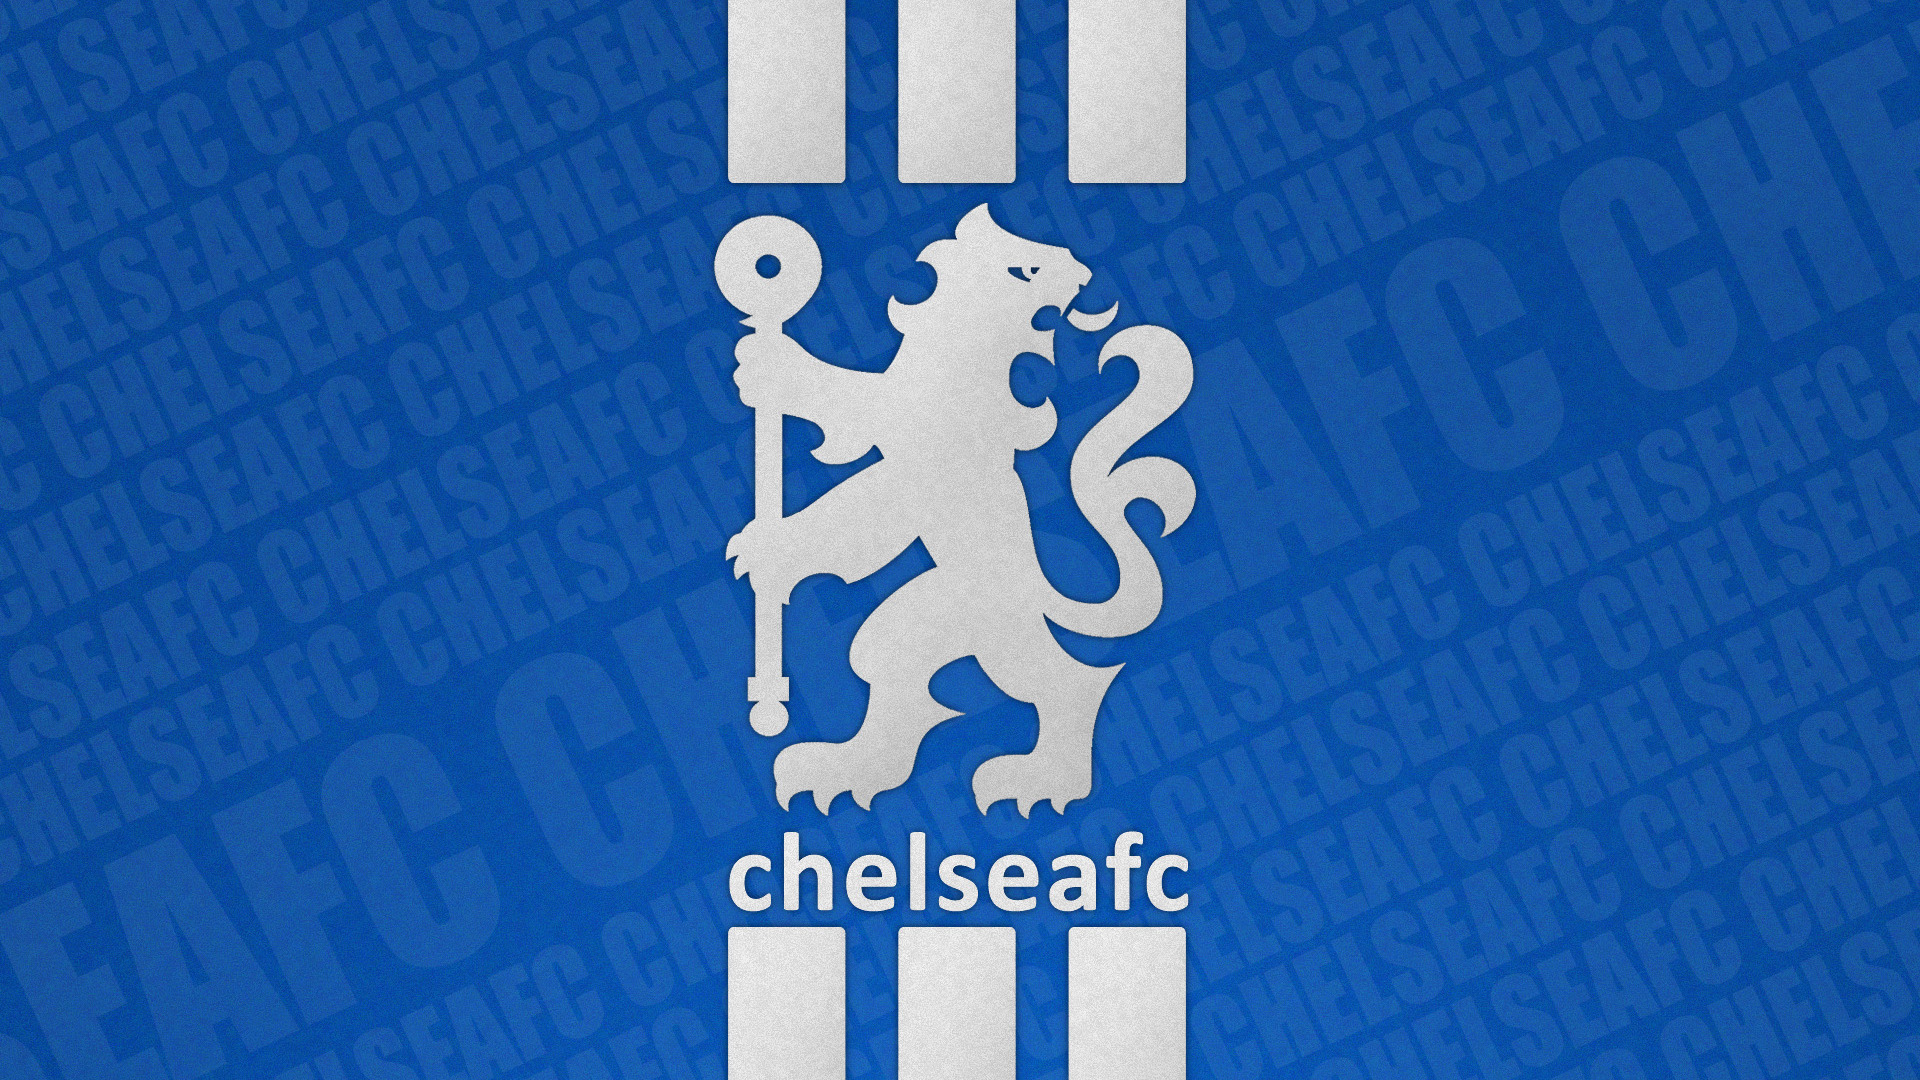 HD Chelsea Fc Logo Wallpaper